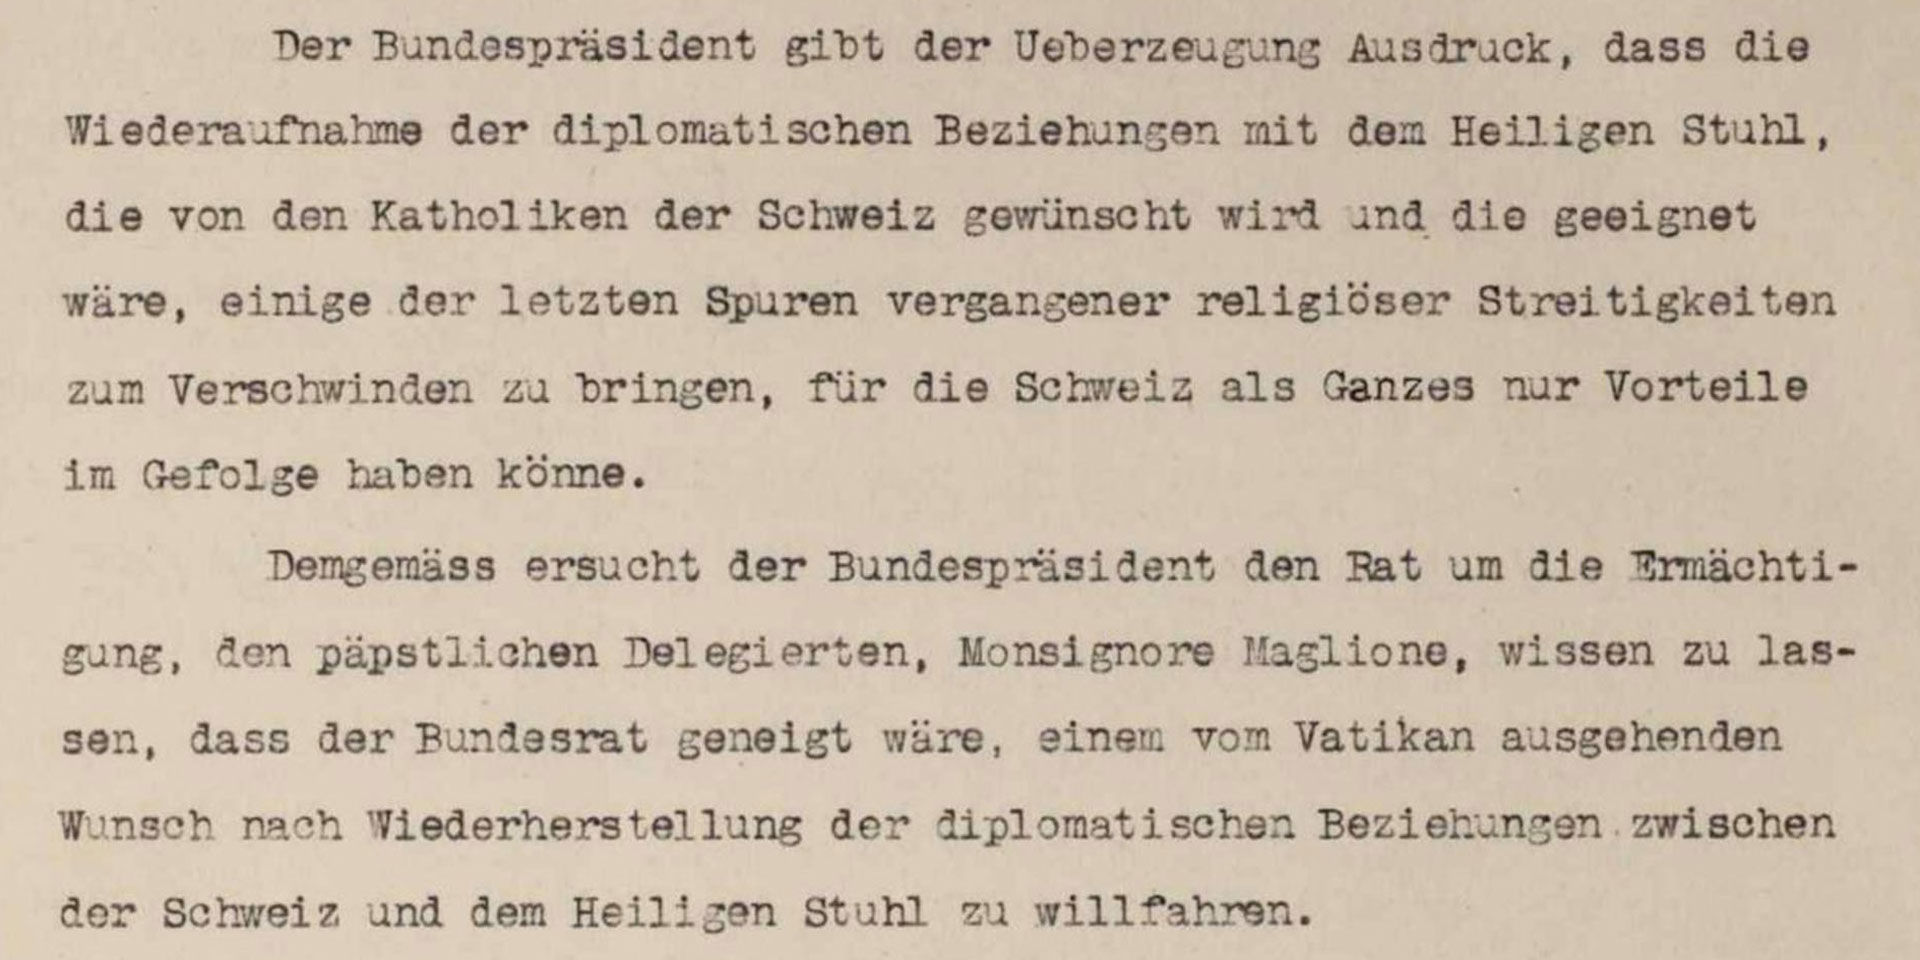 Auszug aus dem Protokoll der Bundesratssitzung vom 18. Juni 1920 zum Antrag von Bundespräsident Giuseppe Motta, die diplomatischen Beziehungen zum Heiligen Stuhl wiederaufzunehmen.